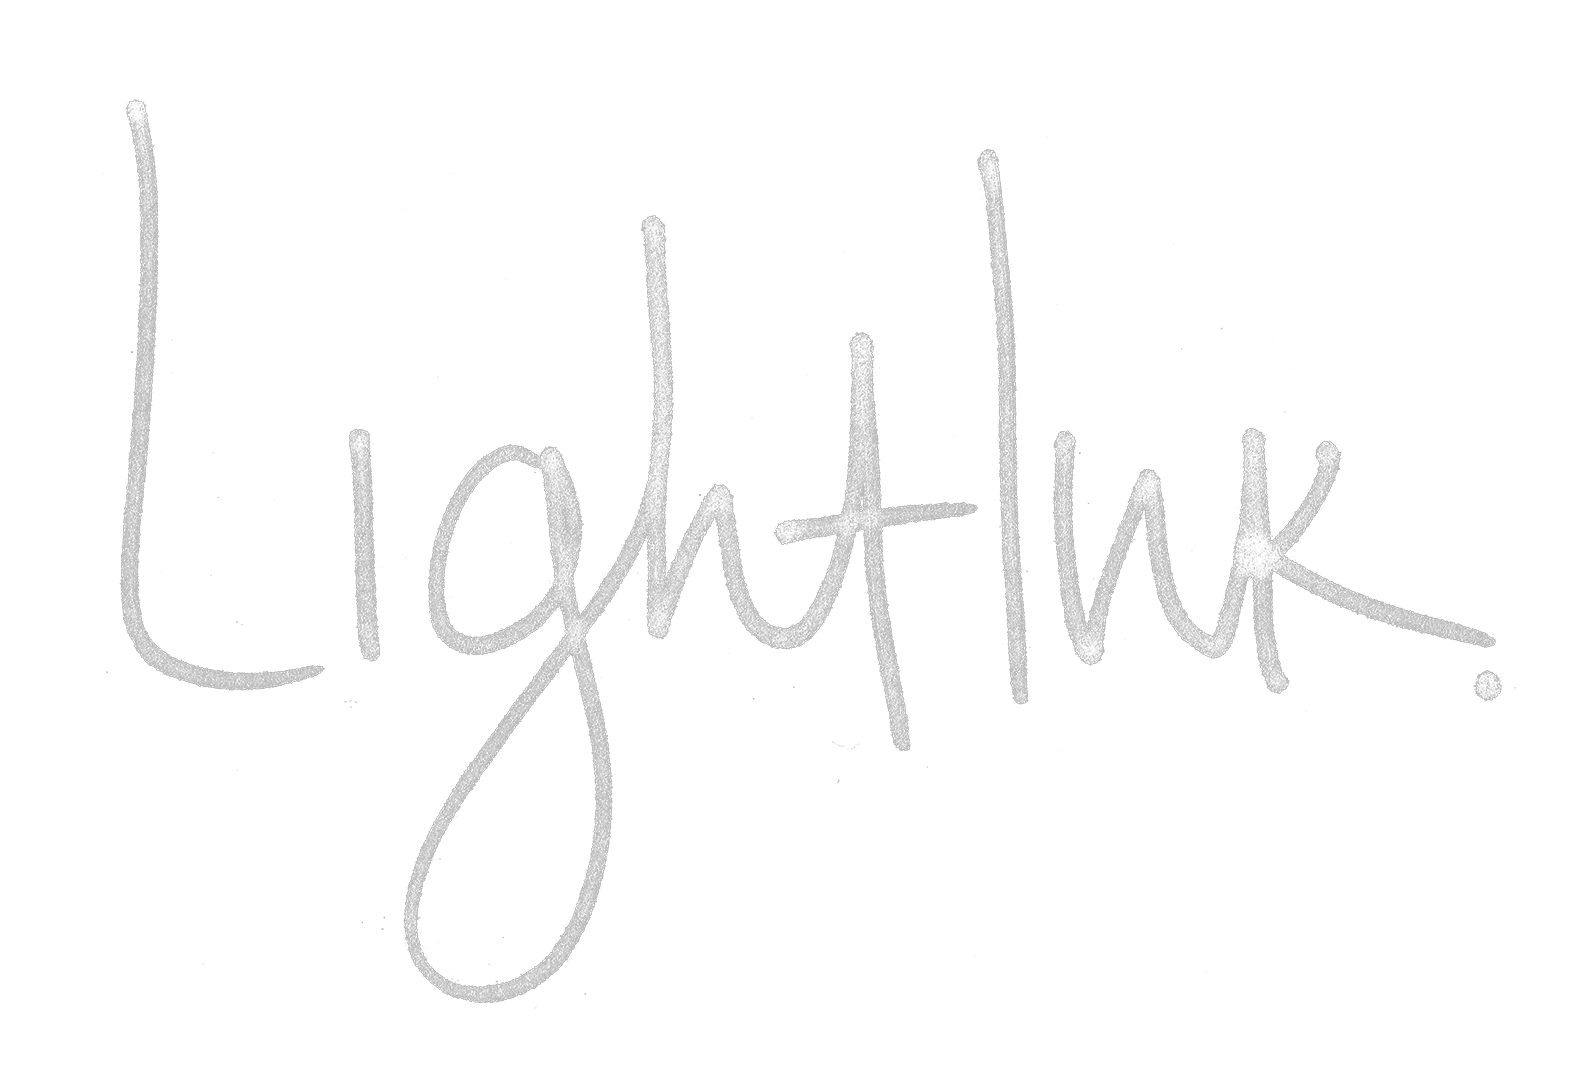 LightInk